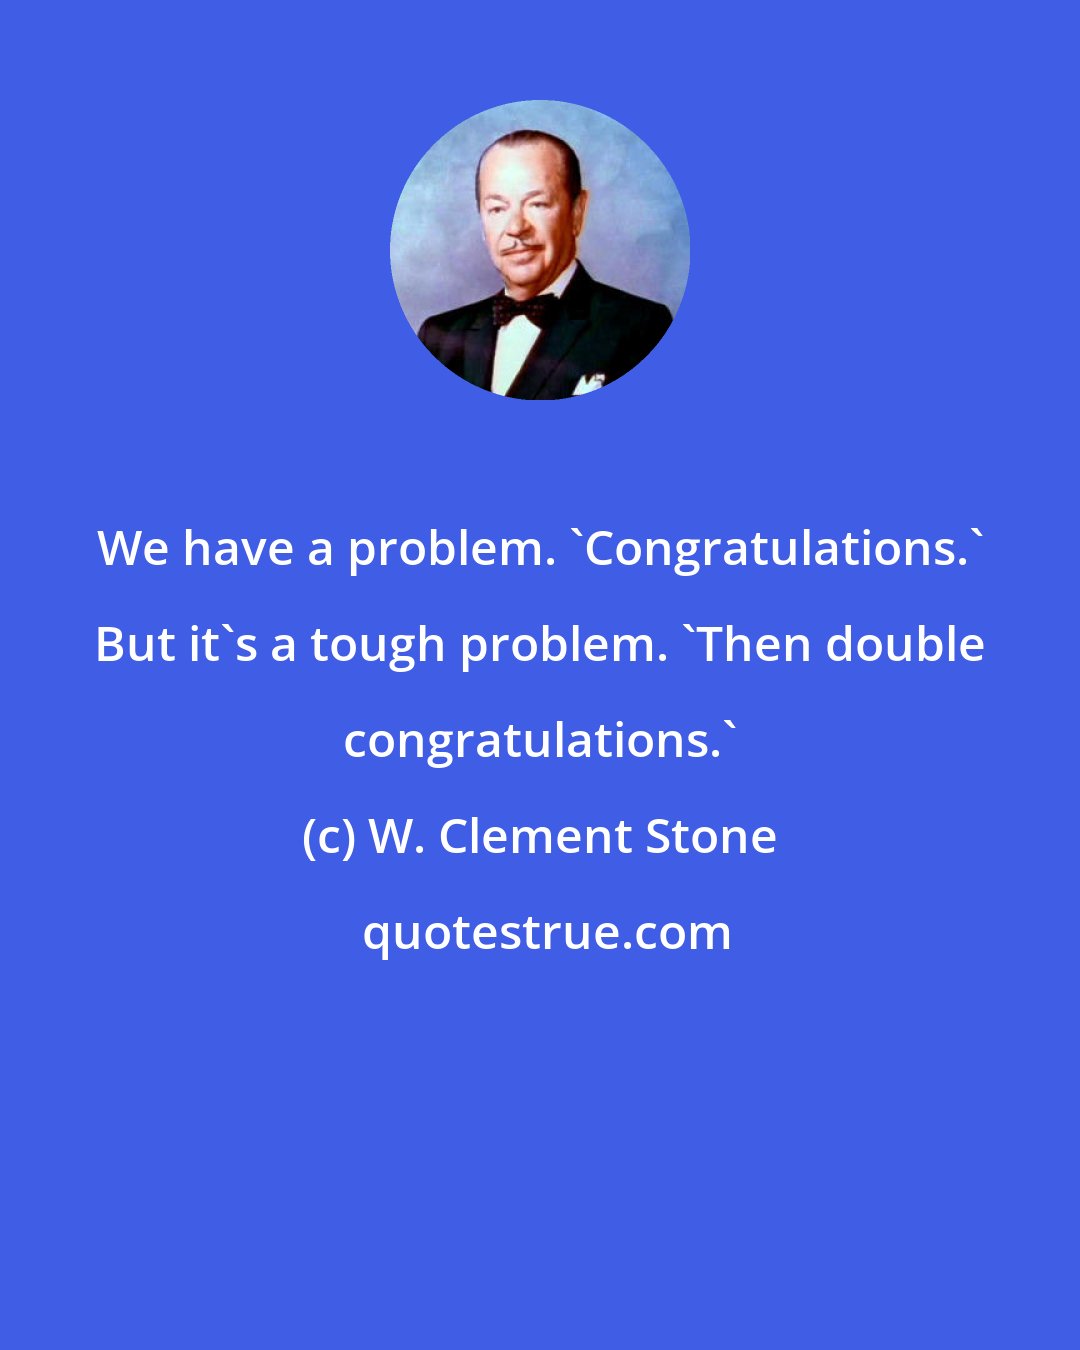 W. Clement Stone: We have a problem. 'Congratulations.' But it's a tough problem. 'Then double congratulations.'